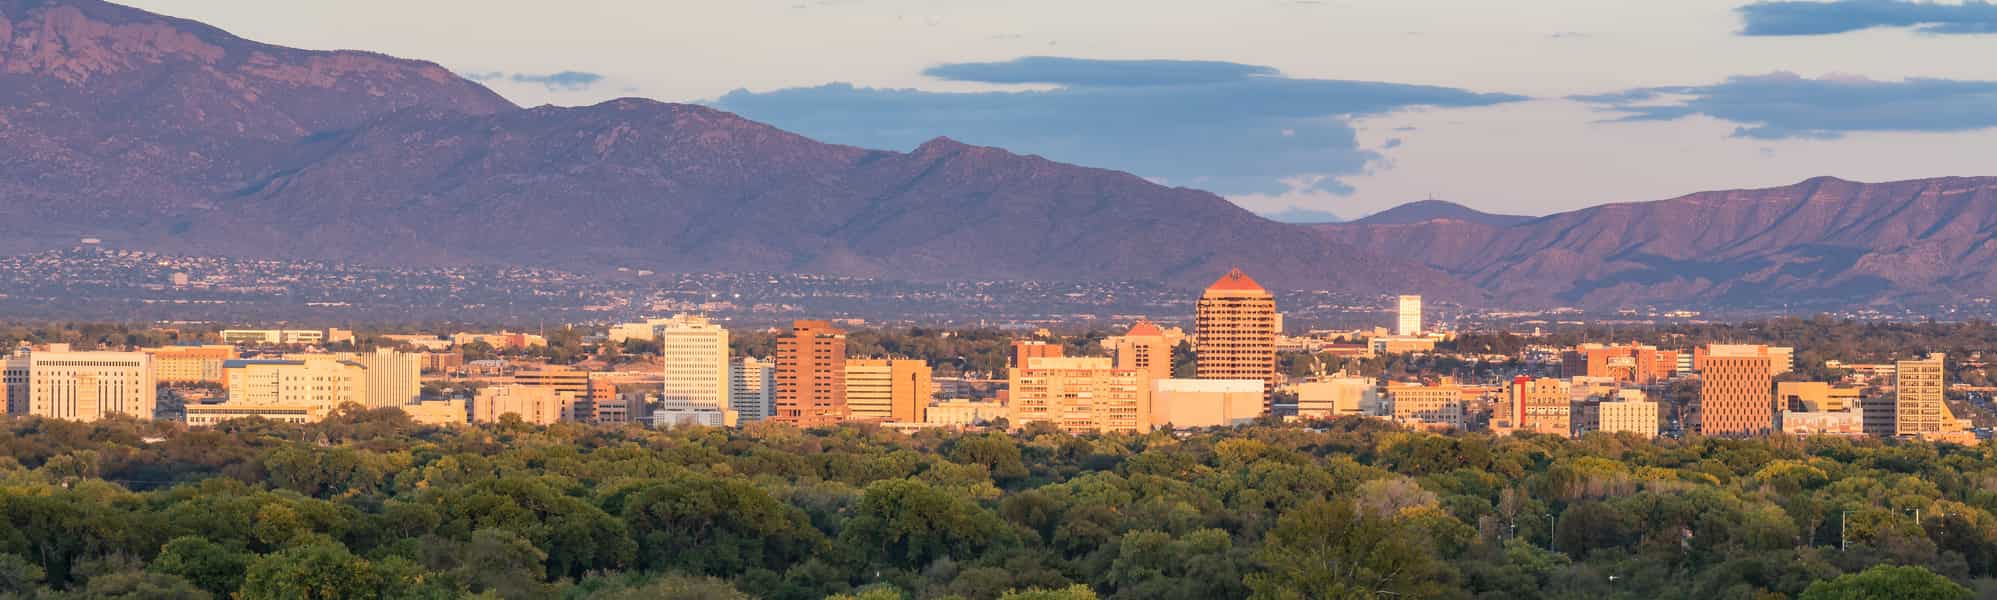 Albuquerque Real Estate Market Prices, Trends & Forecasts 2022